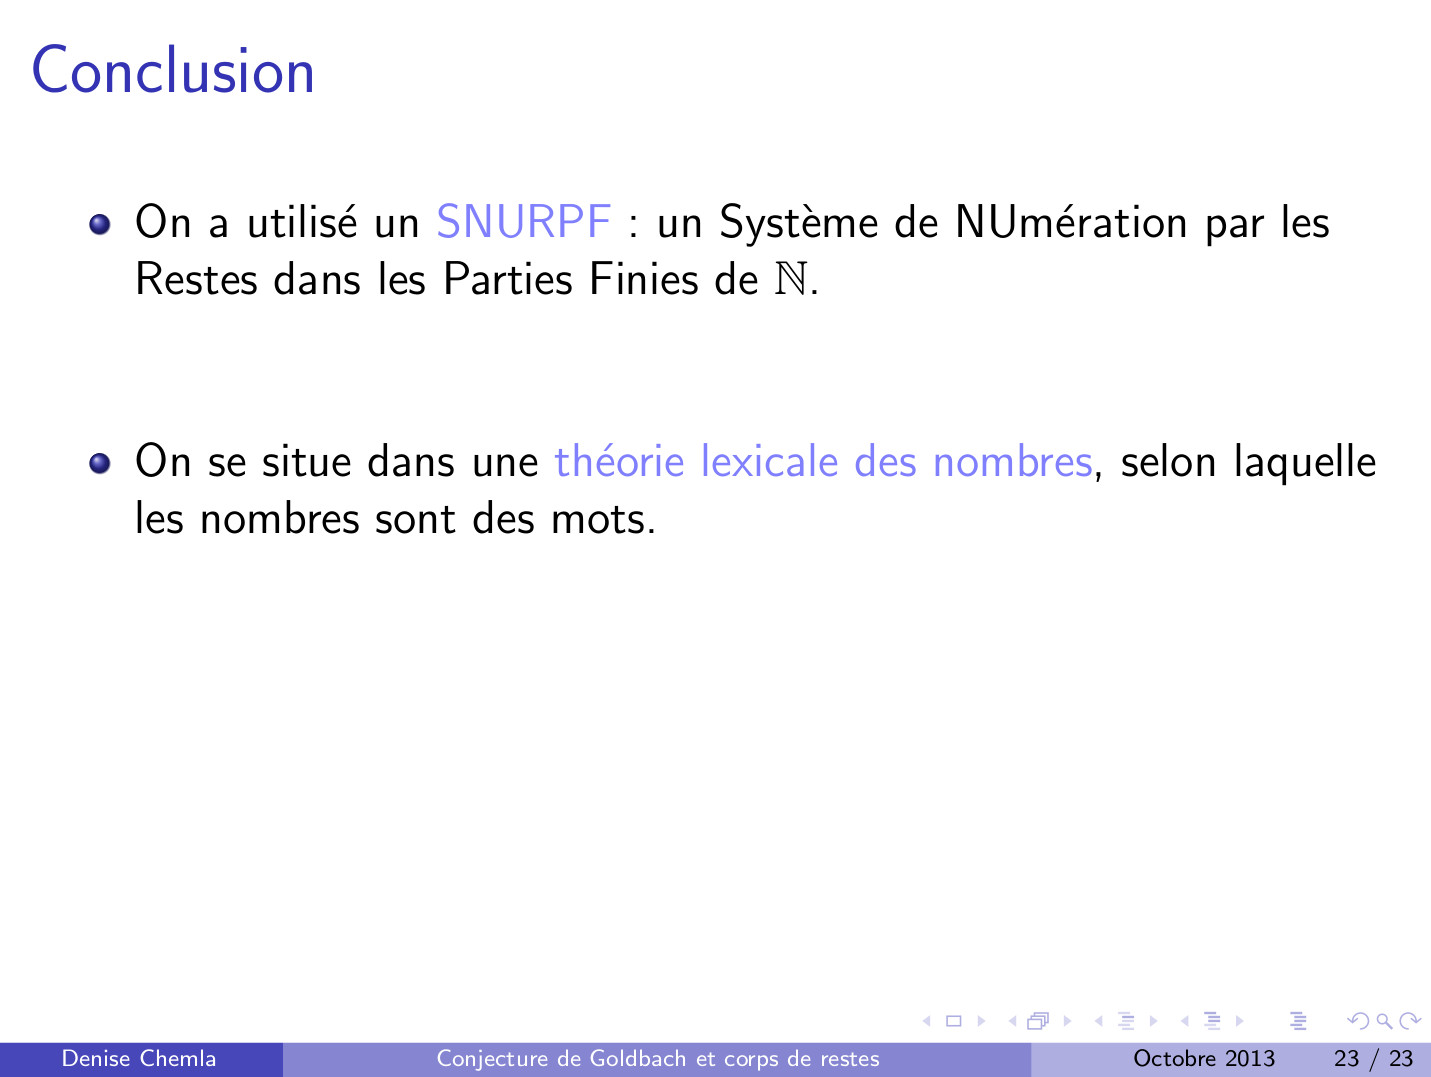 le SNURPF ou Système de Numération par les restes dans les Parties Finies de N que j’ai utilisé pour comprendre la conjecture de Goldbach